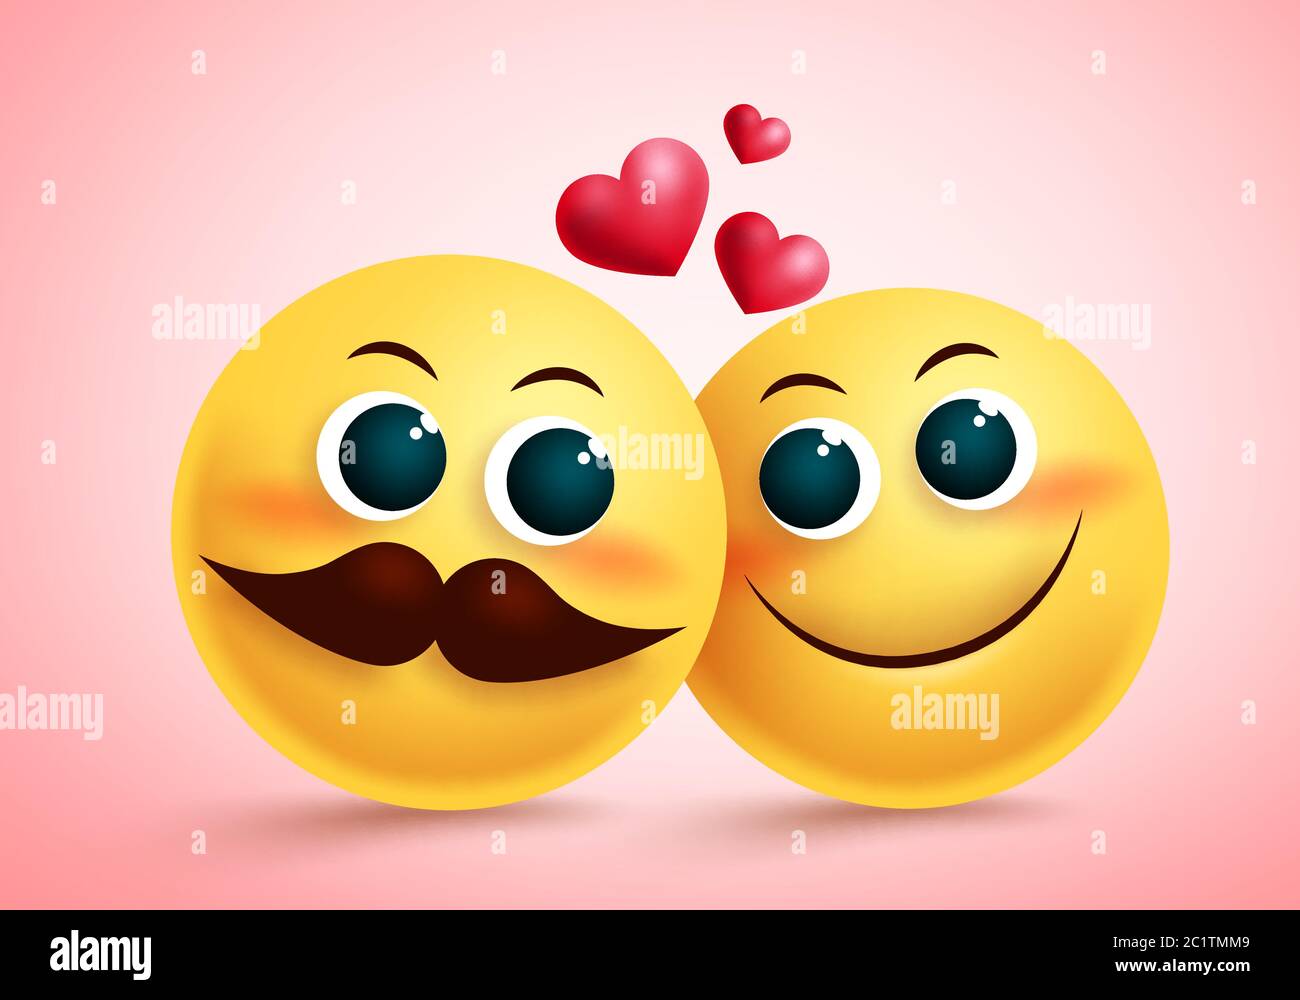 Smiley Emoji Paar in Liebe Vektor-Design. Gelbe niedliche Emojis Liebhaber Charakter mit erröten Gesicht und Herz-Element für Valentinstag und Beziehung. Stock Vektor